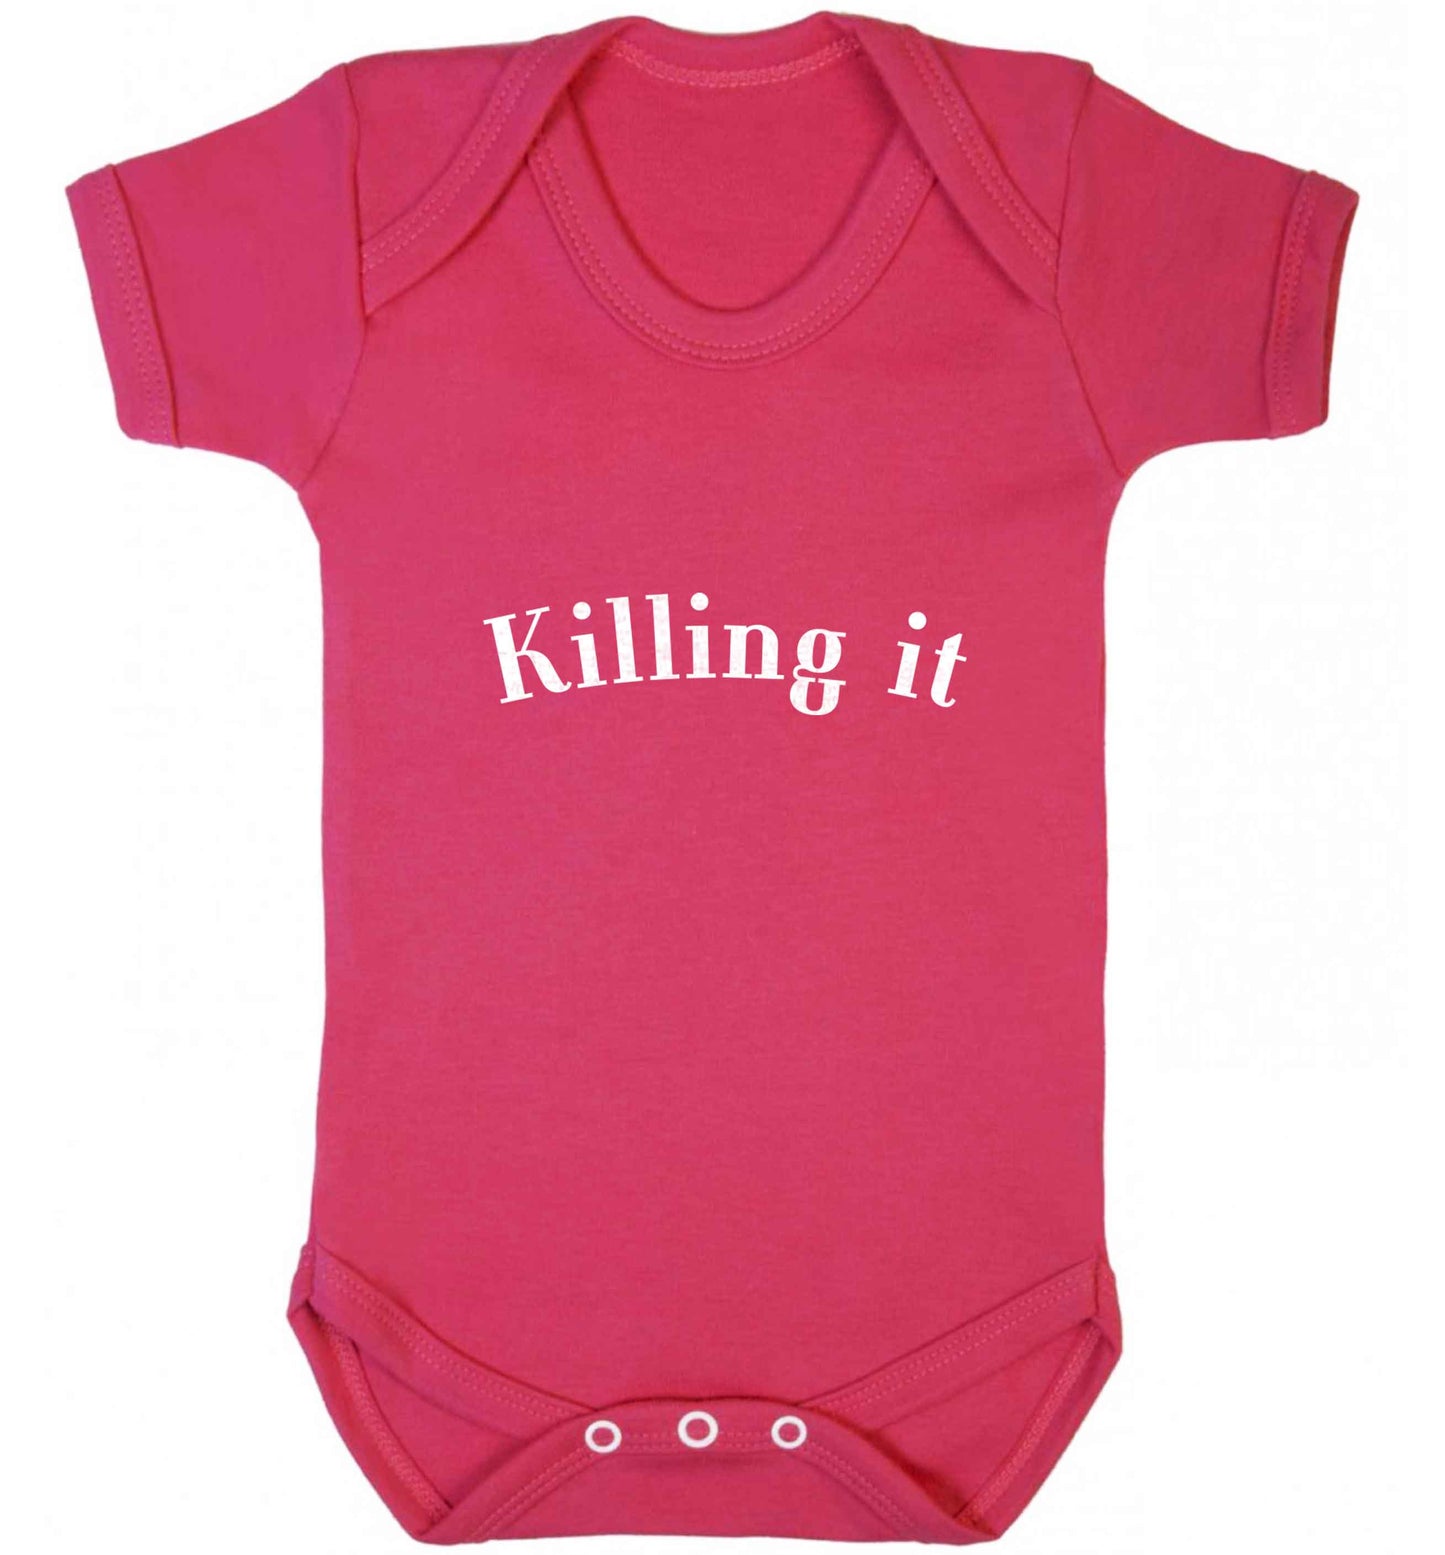 Killing it baby vest dark pink 18-24 months